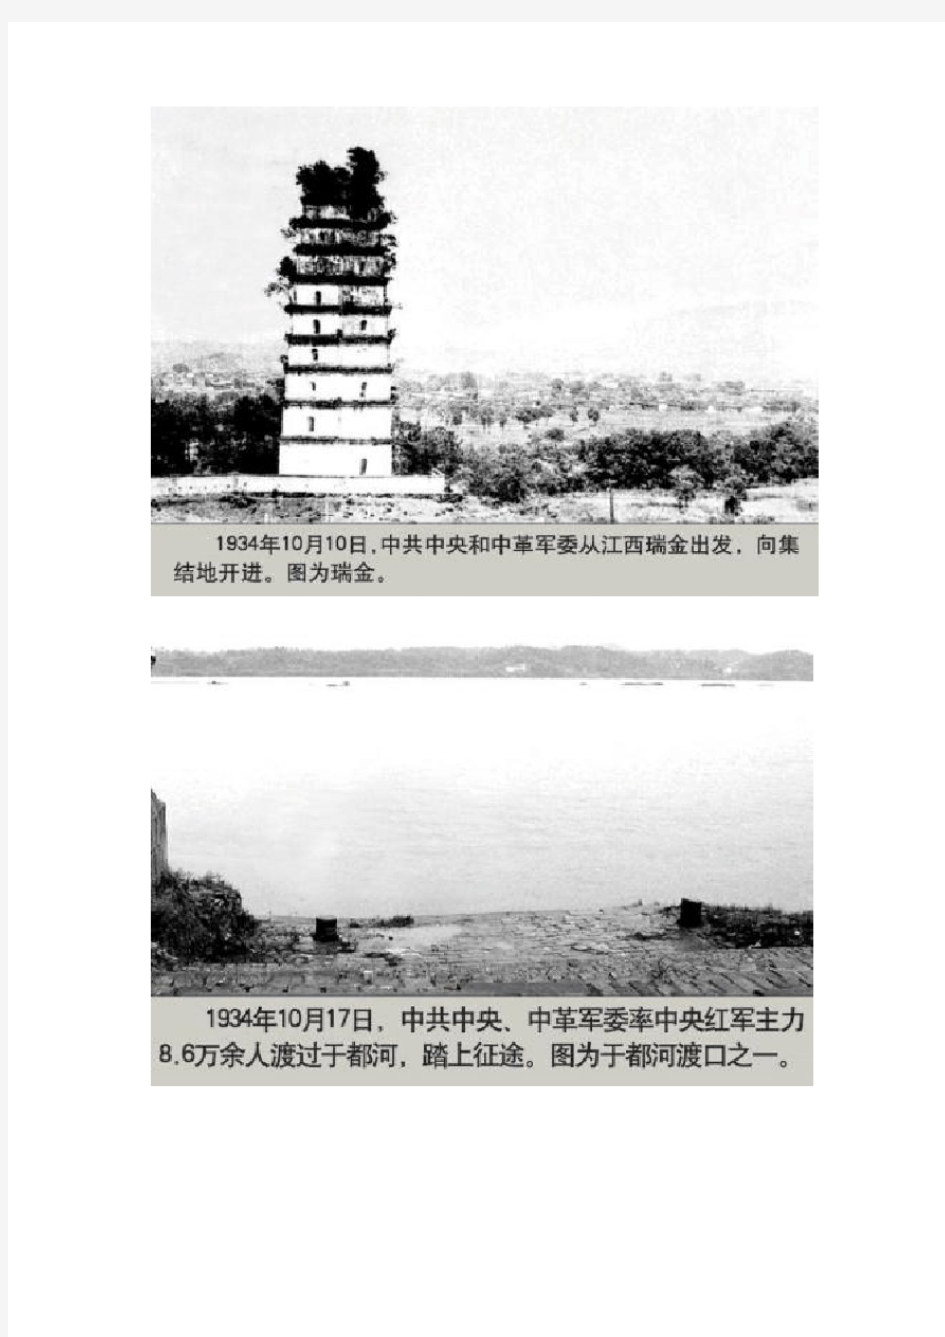 中国工农红军 珍贵历史文献照片